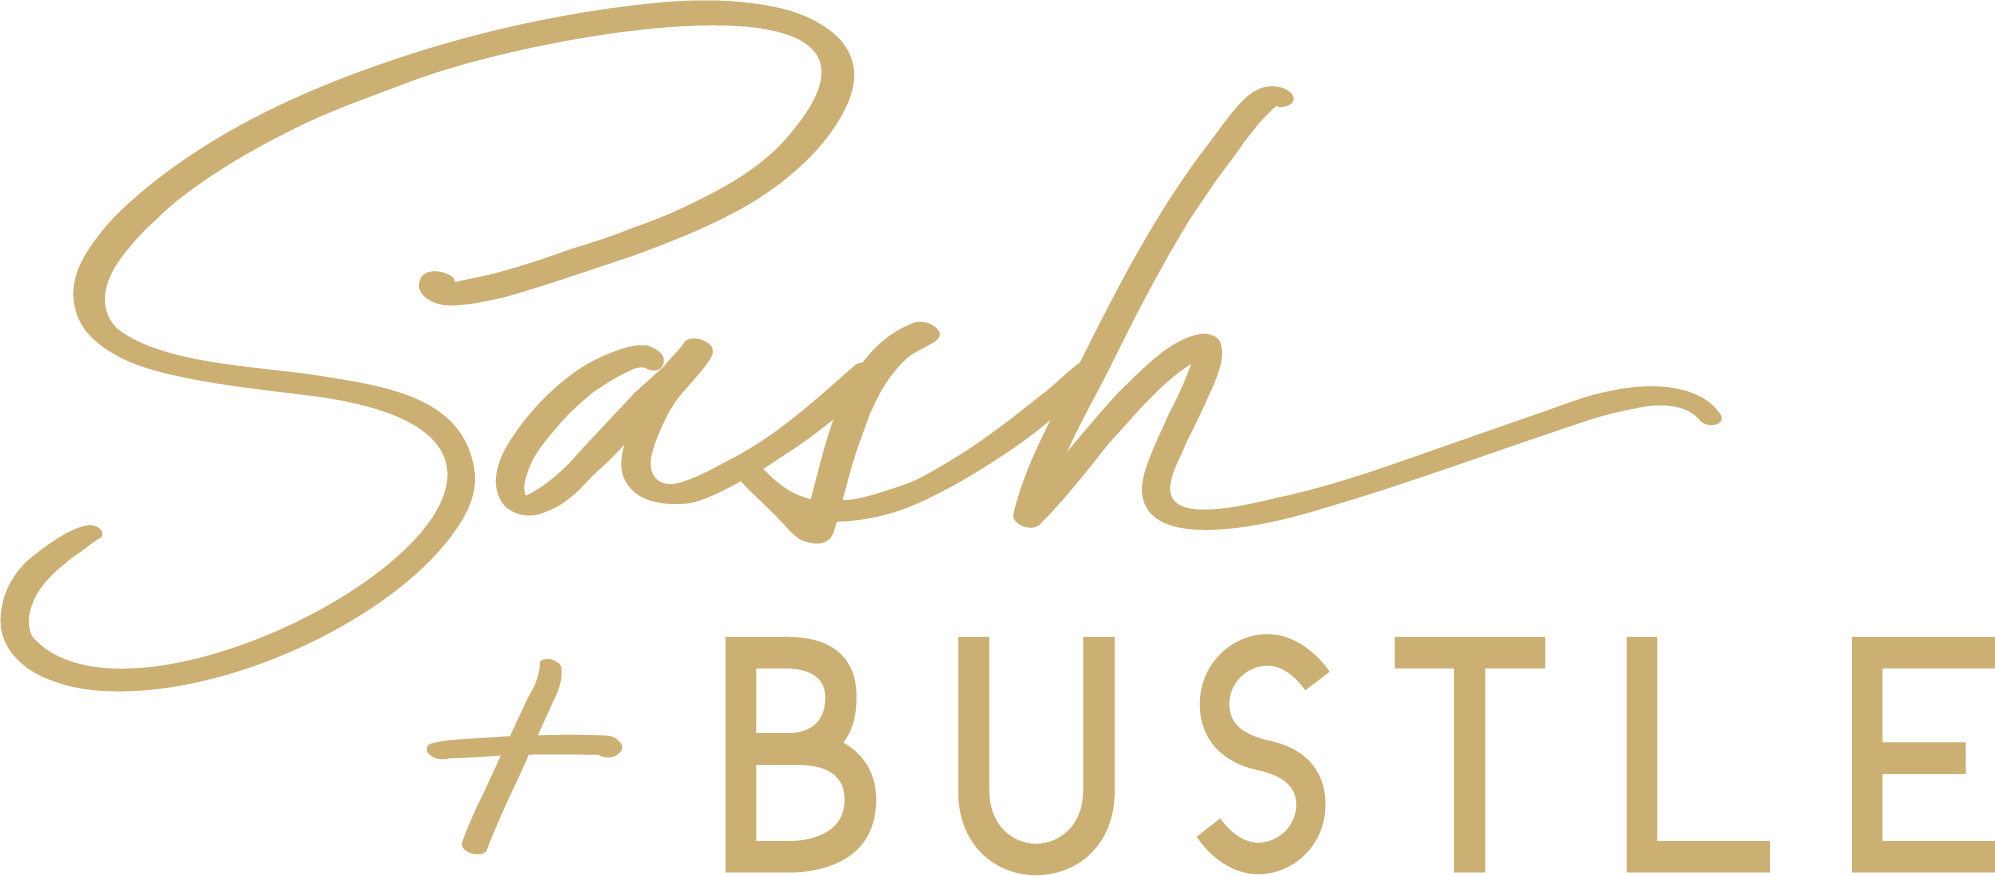 Sash & Bustle Boutique